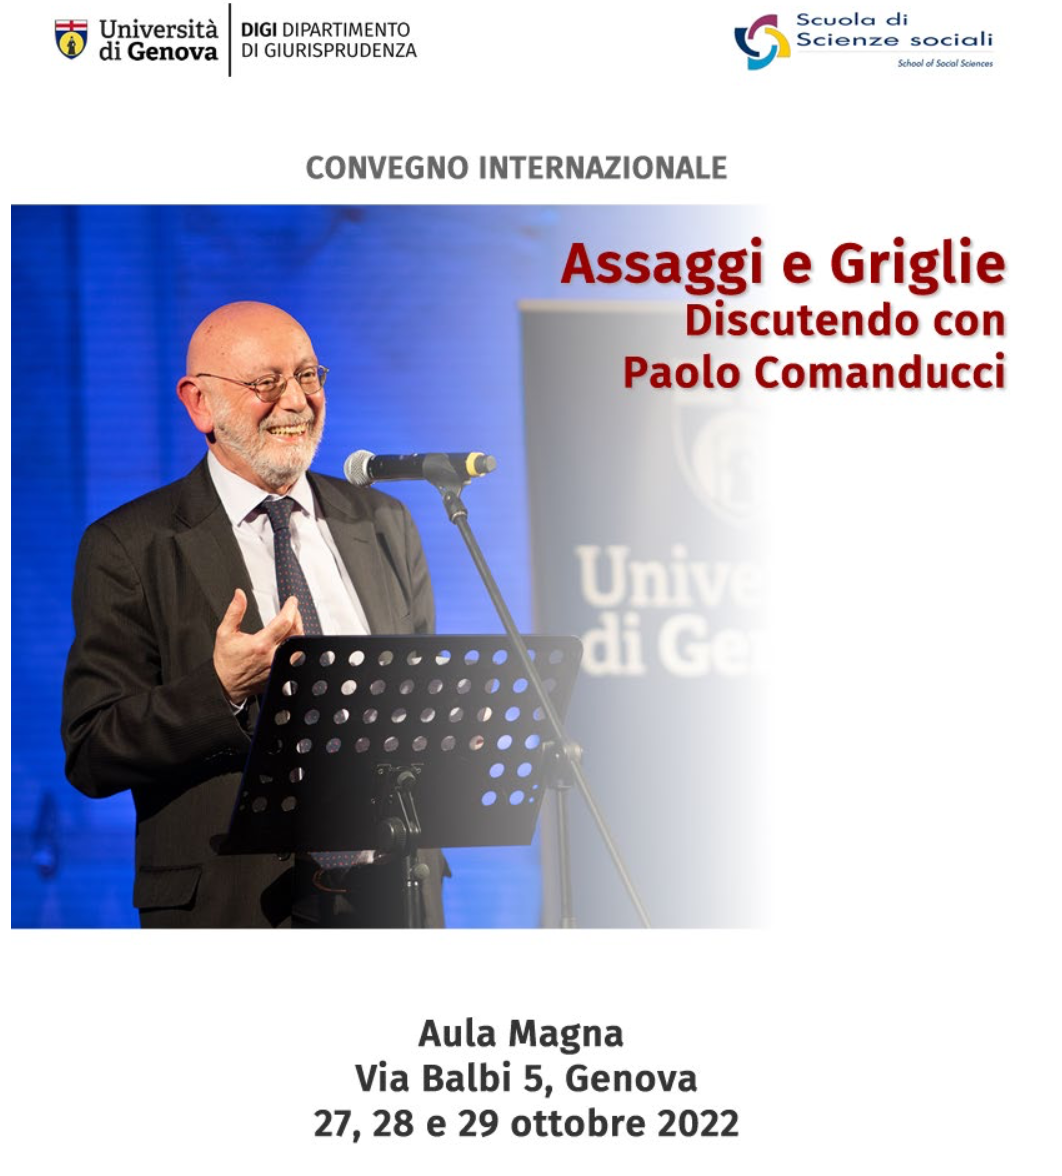 Dal 27 al 29 ottobre 2022 – Convegno internazionale “Assaggi e Griglie. Discutendo con Paolo Comanducci”